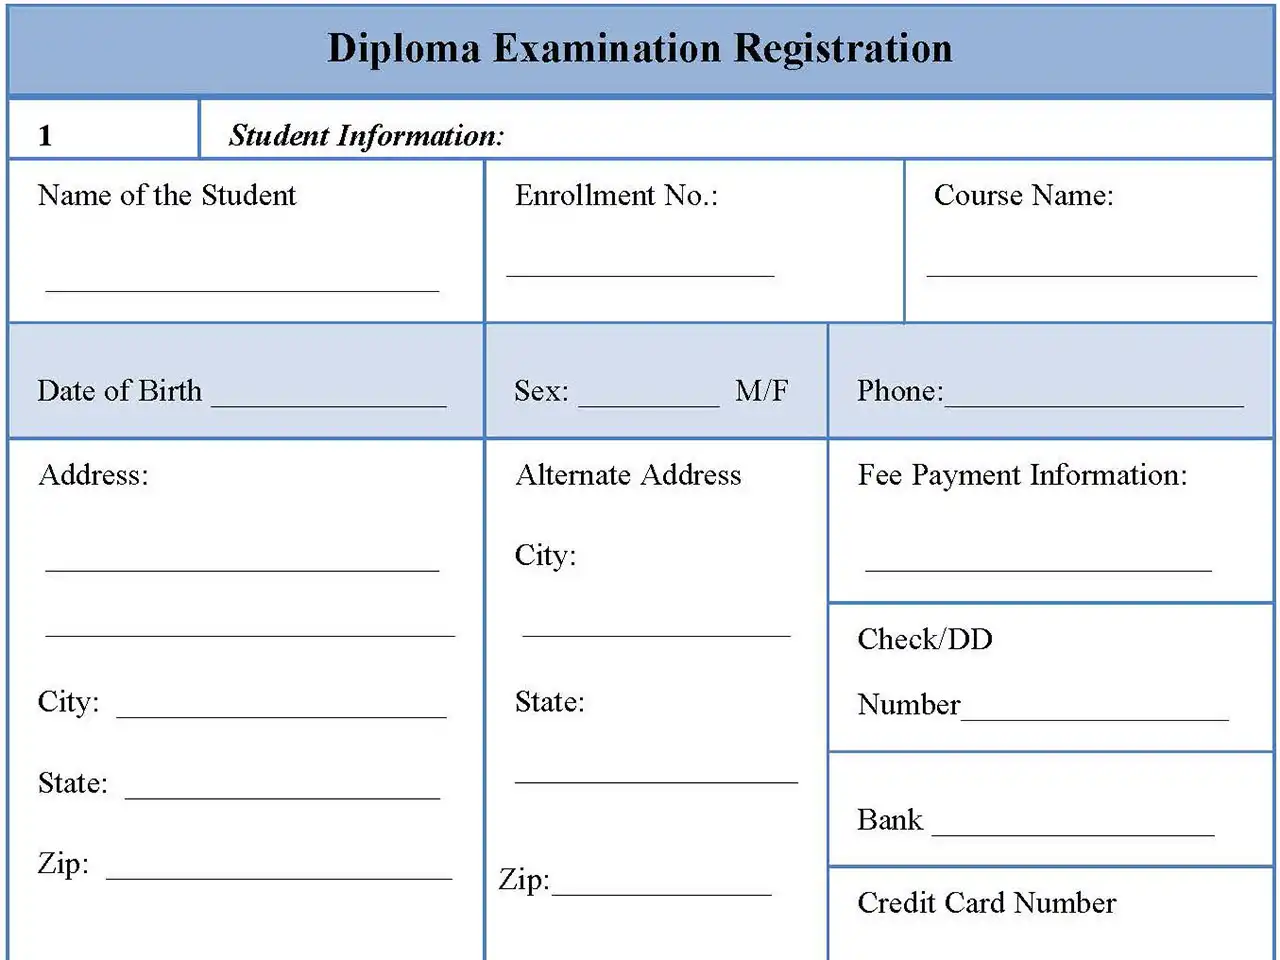 Diploma Examination Registration Form